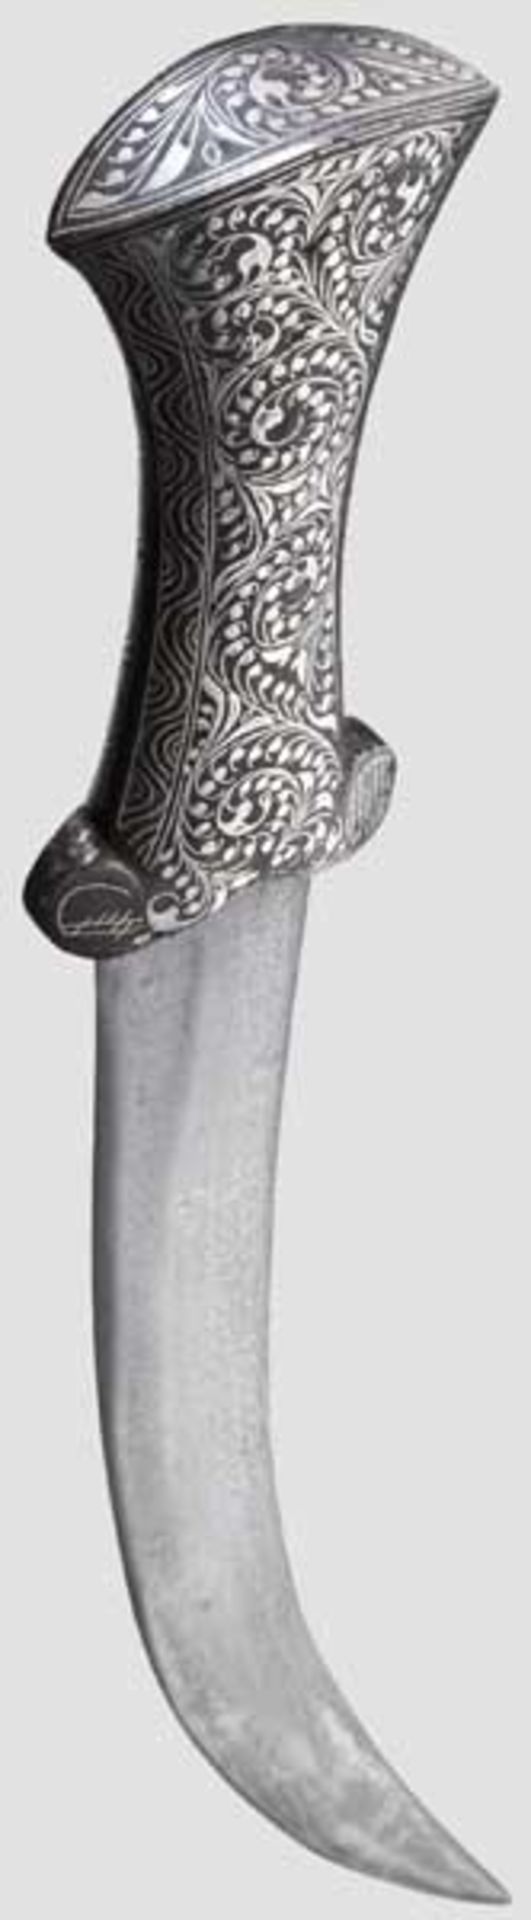 Silbertauschierte Djambia, Indien, 20. Jhdt.   Gekrümmte, zweischneidige Damastklinge mit - Bild 2 aus 2